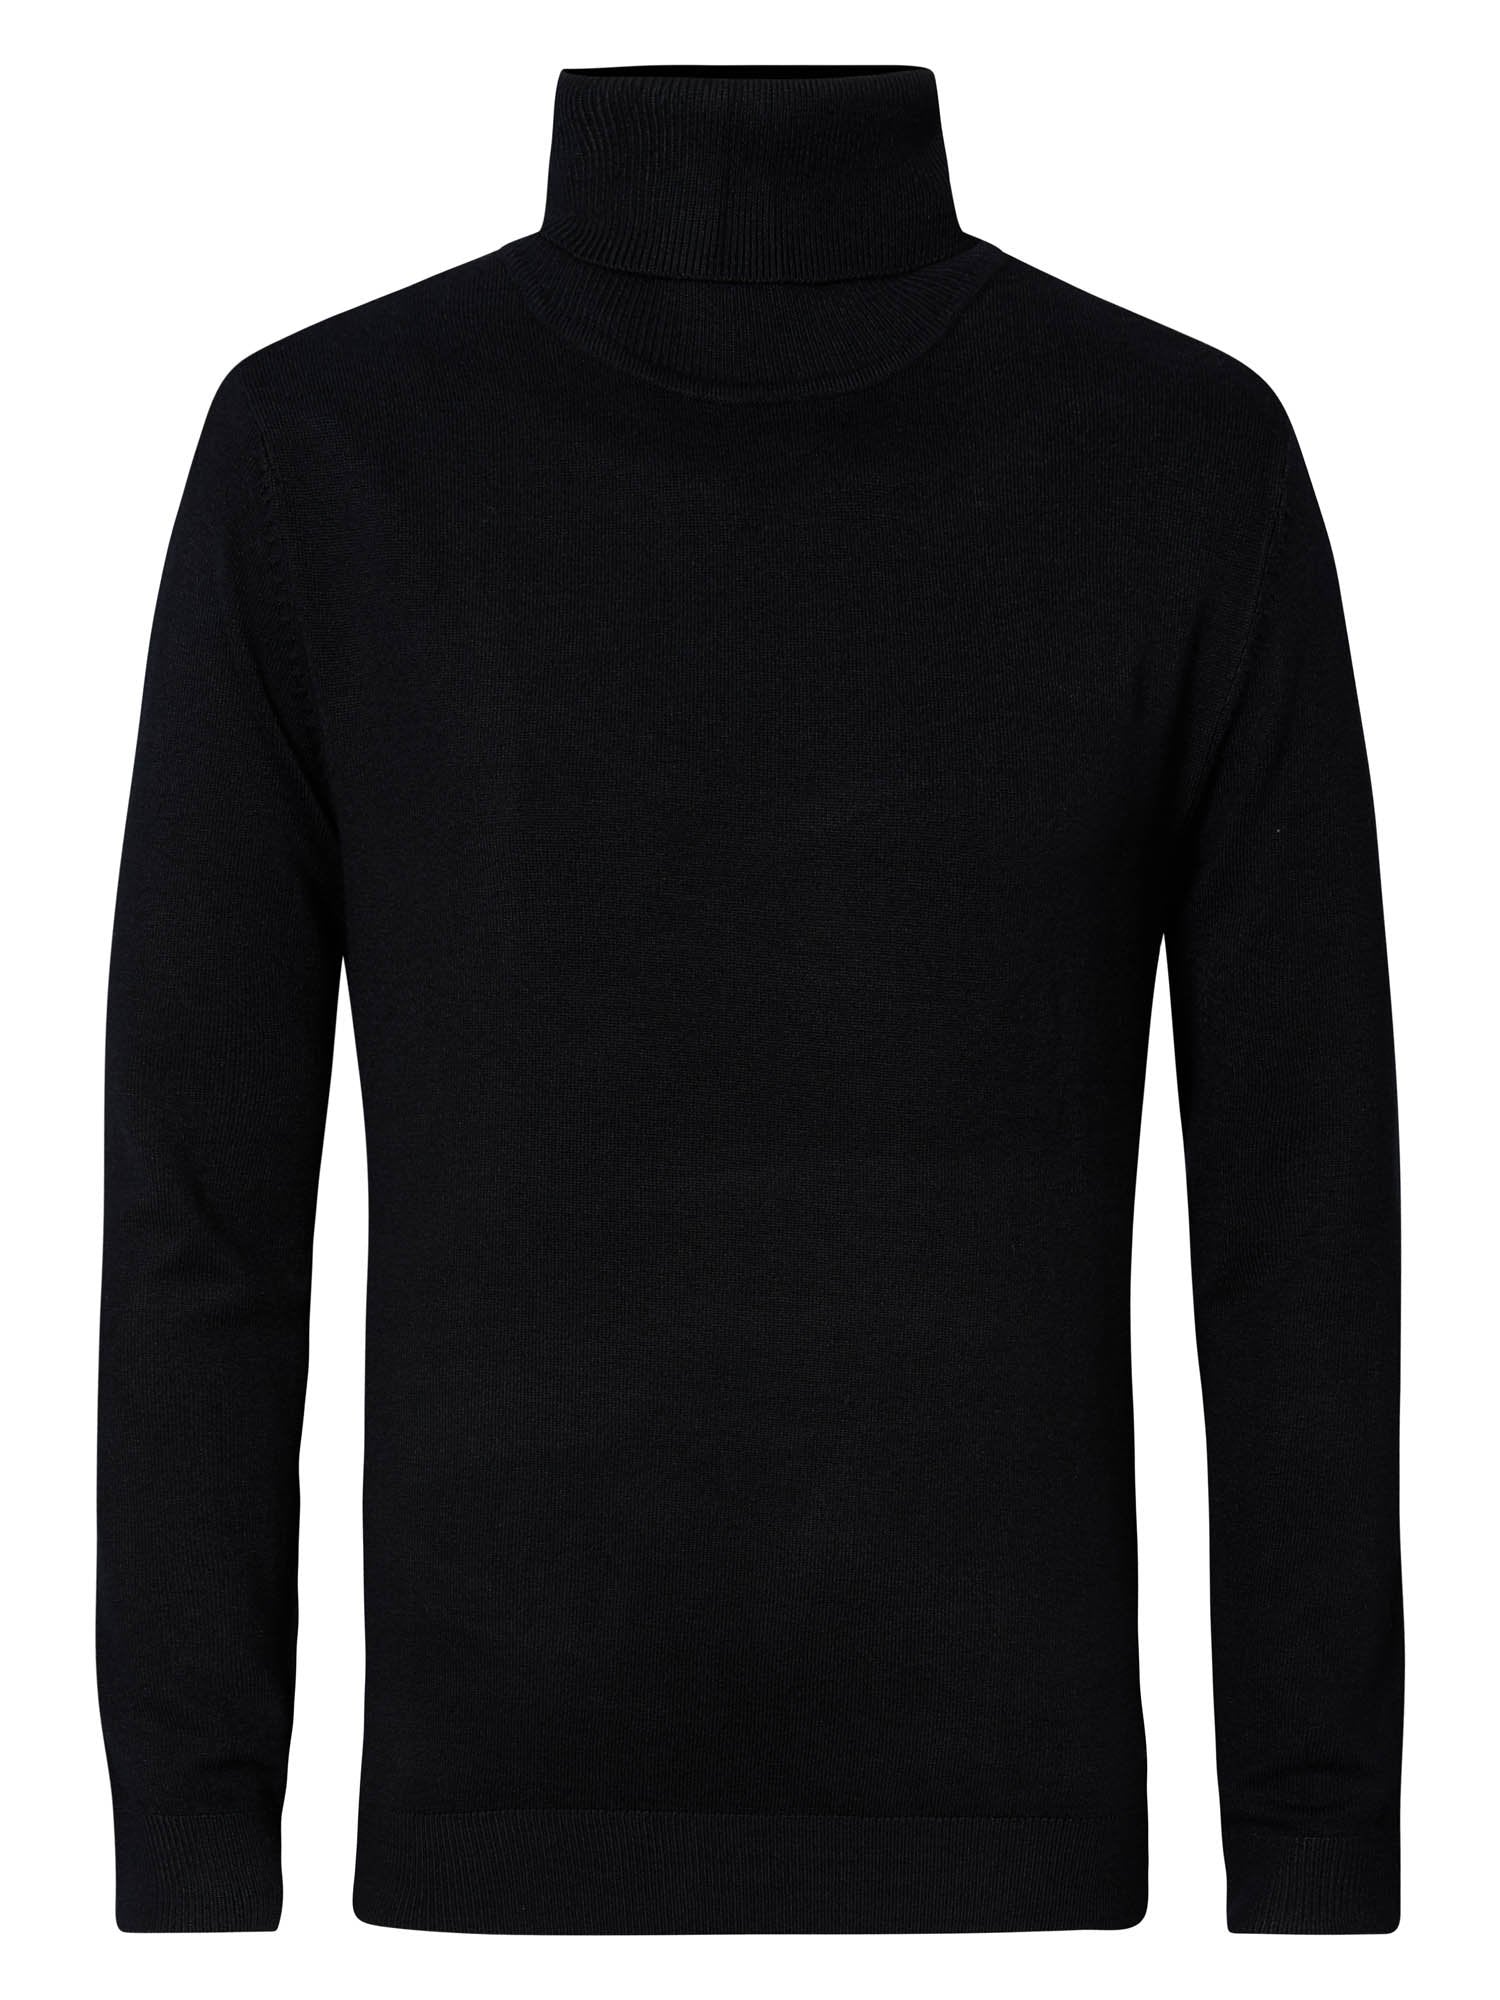 Jongens Knitwear Collar Black van Petrol in de kleur Black in maat 164.